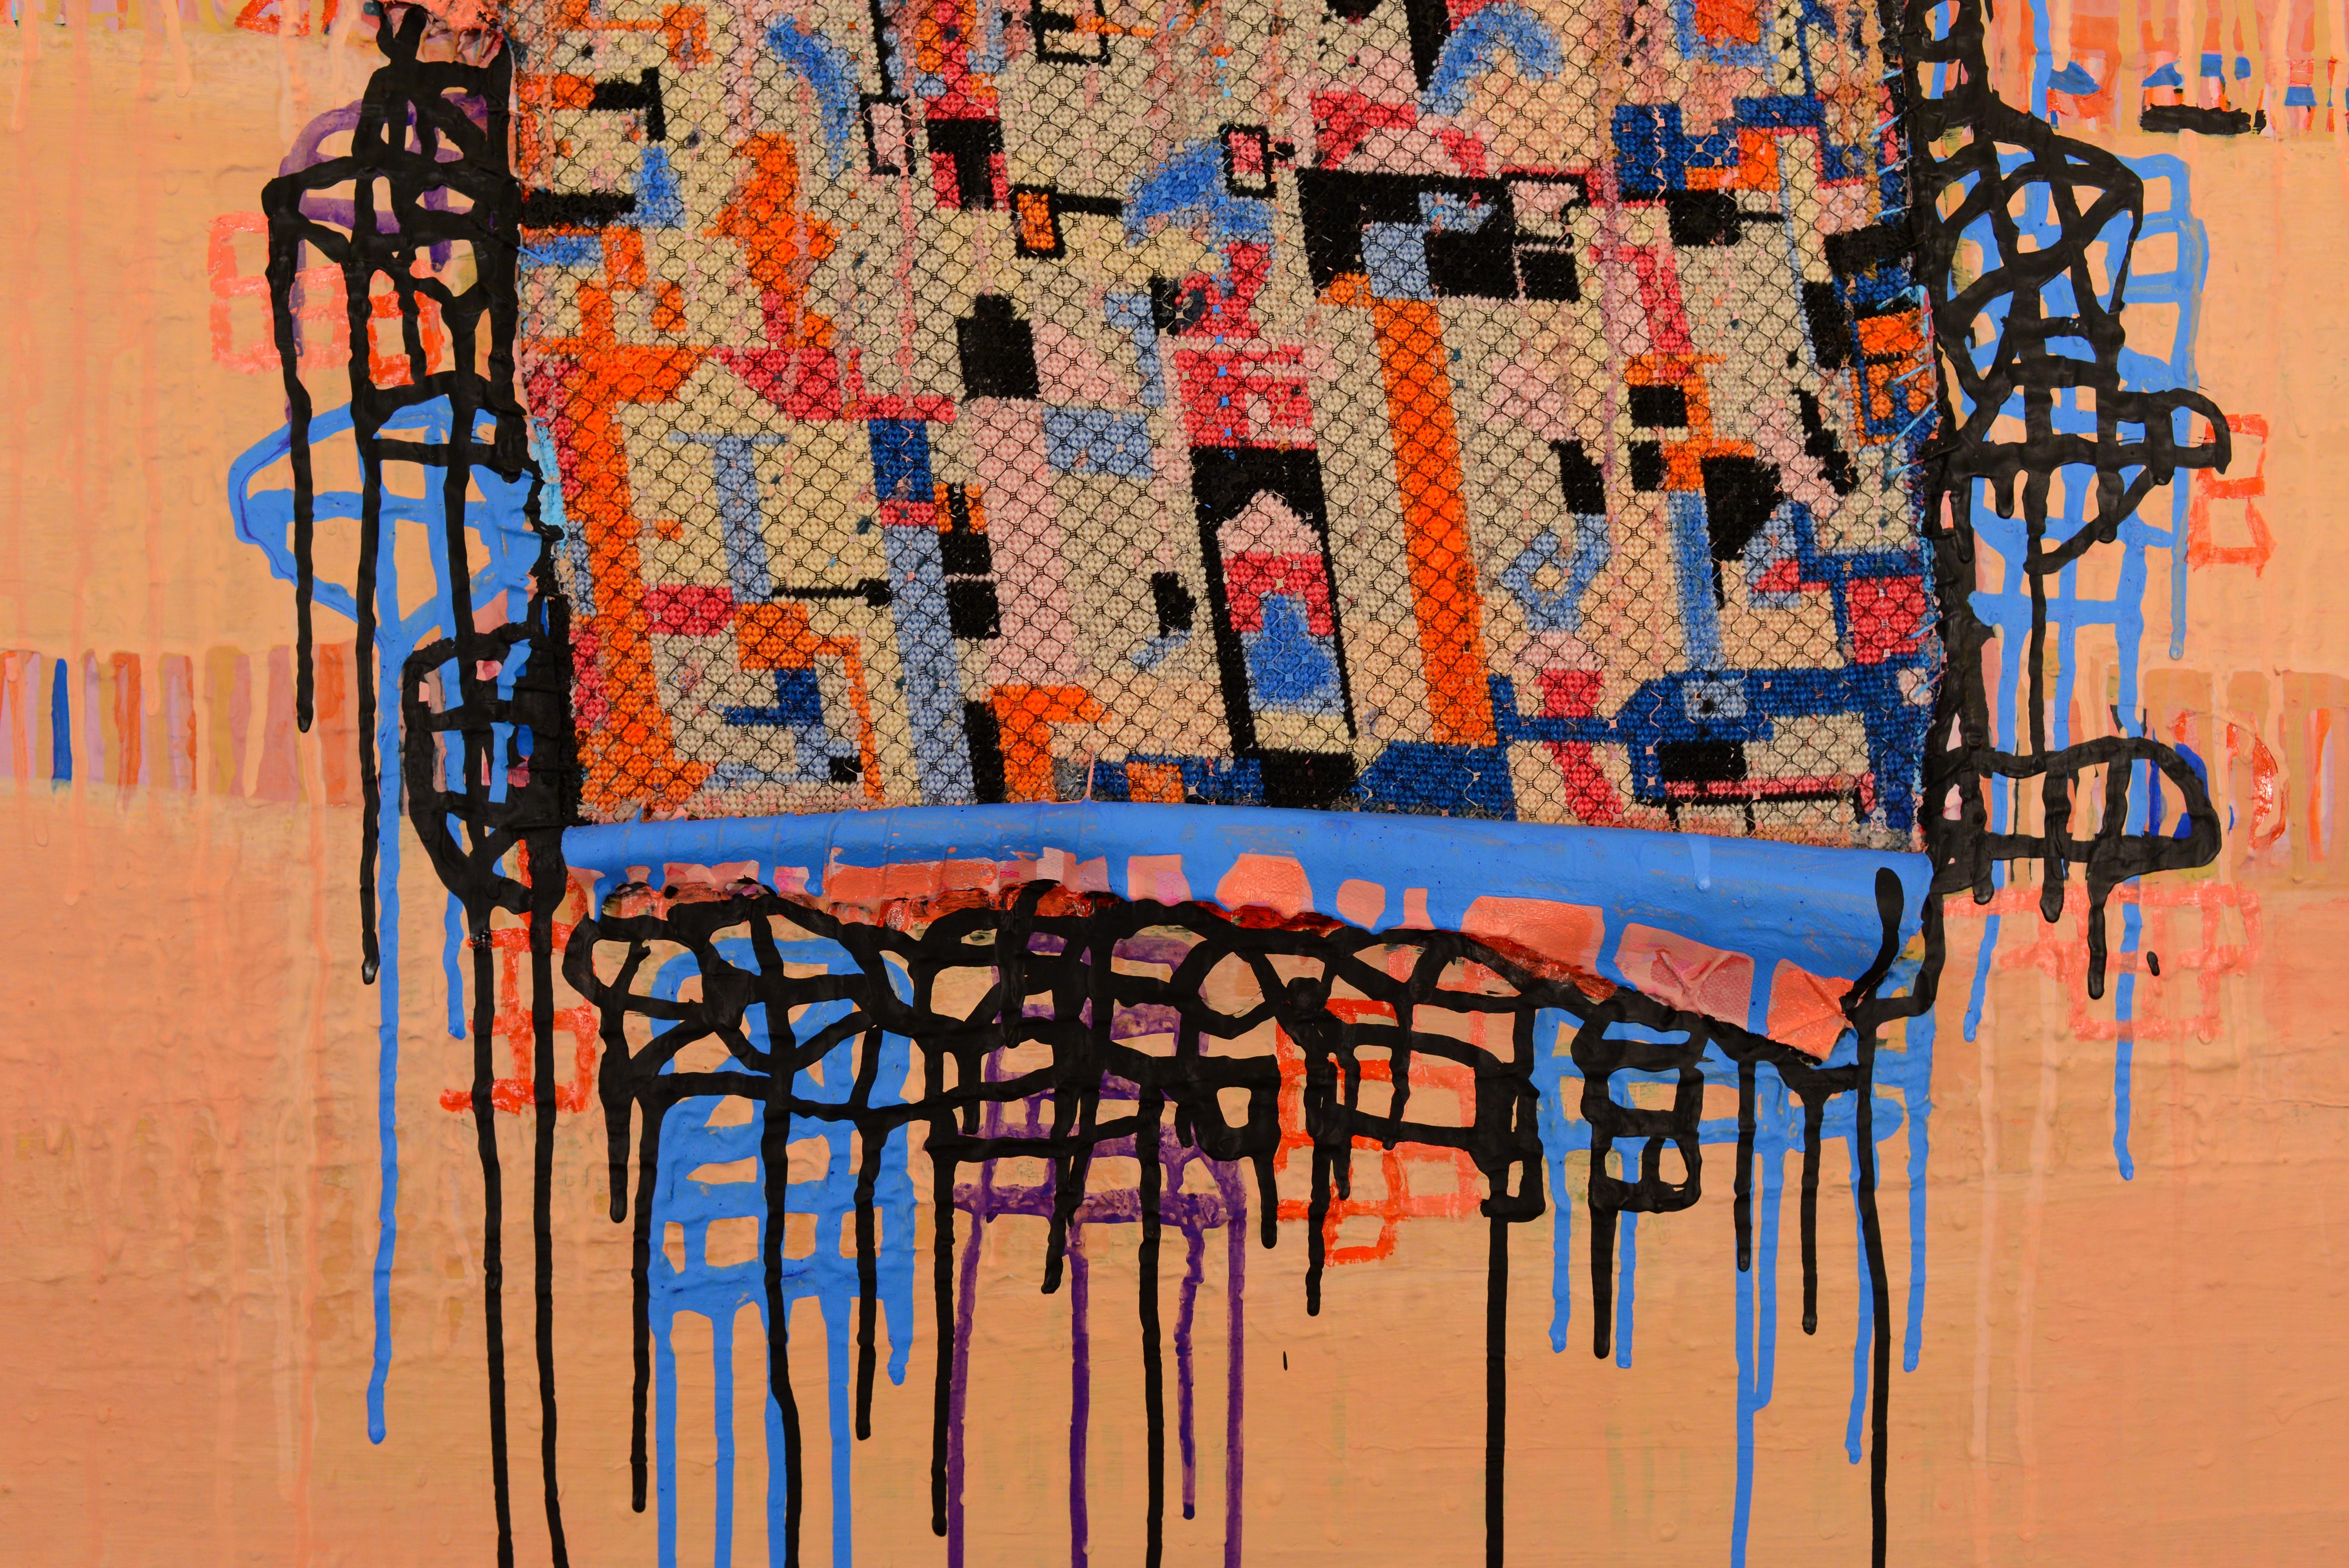 Caldo Estivo, Motherlode Collection abstract mixed media - Contemporary Mixed Media Art by Andrée B Carter